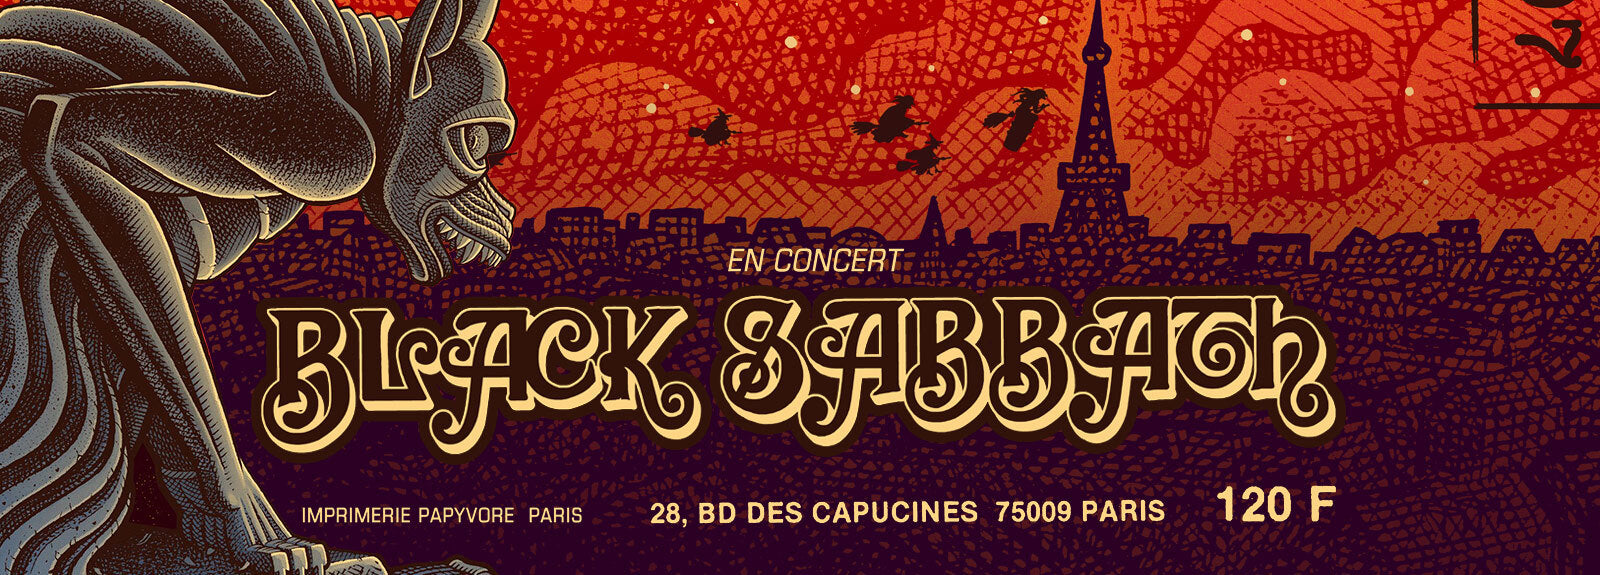 Black Sabbath Paris 1970